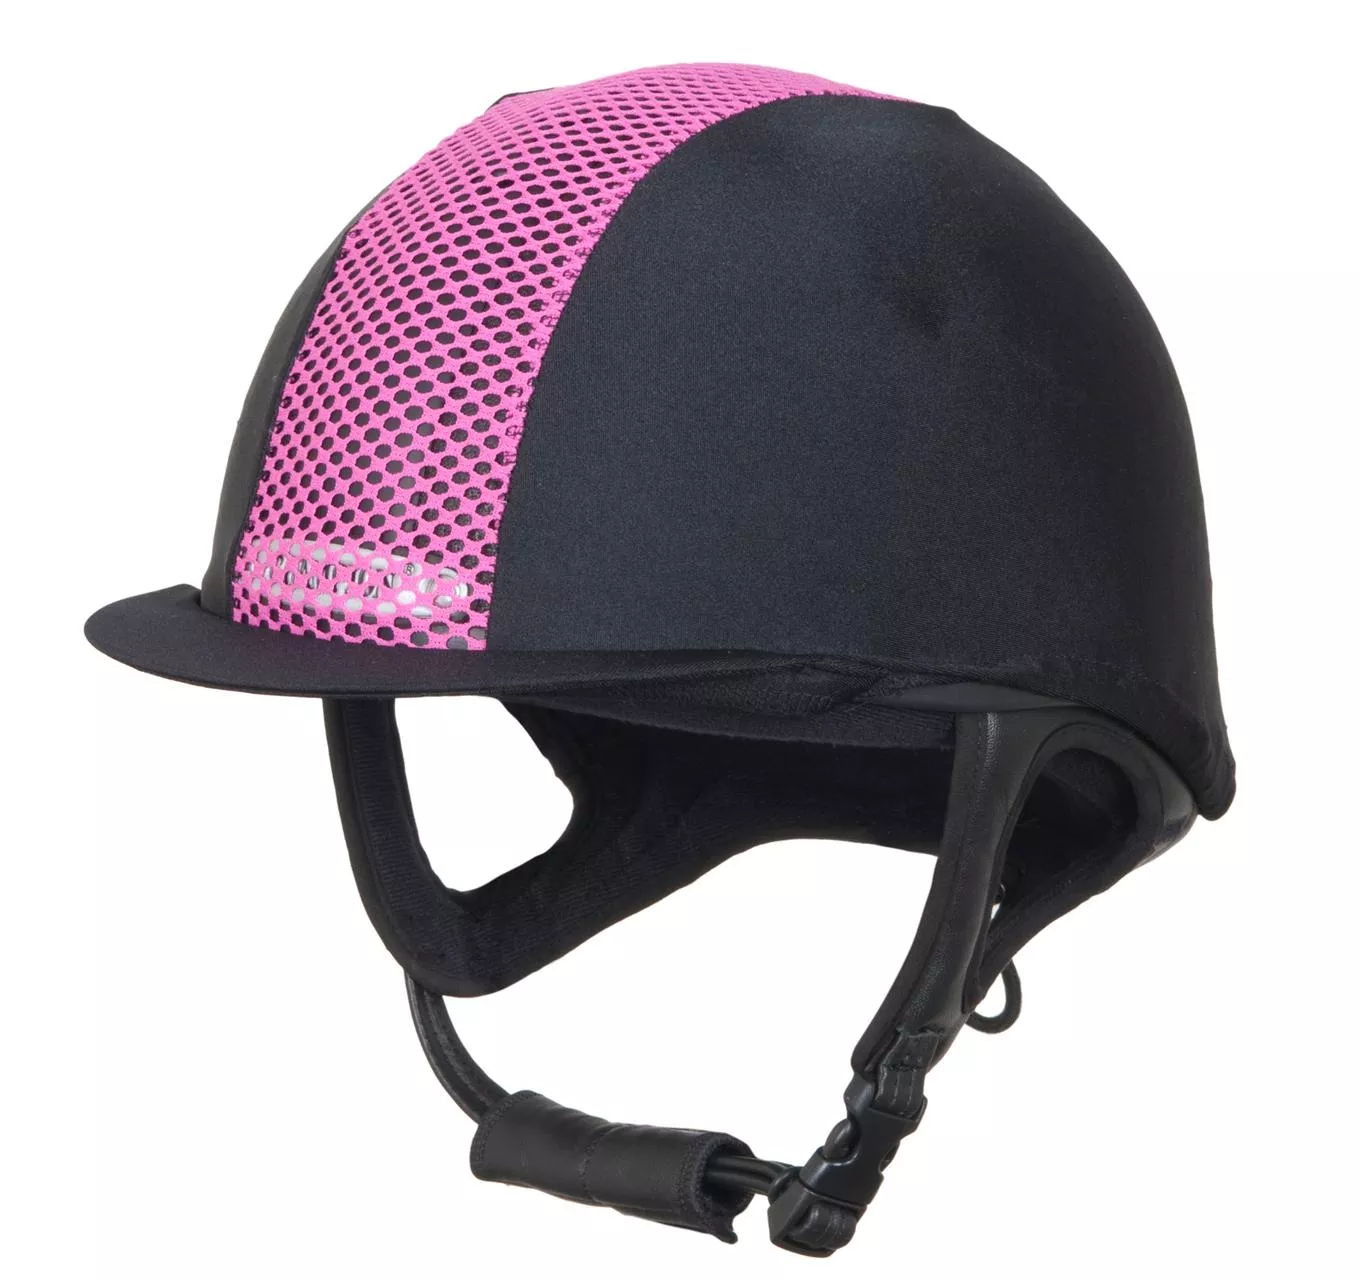 Ventair Cap Cover Black & Pink